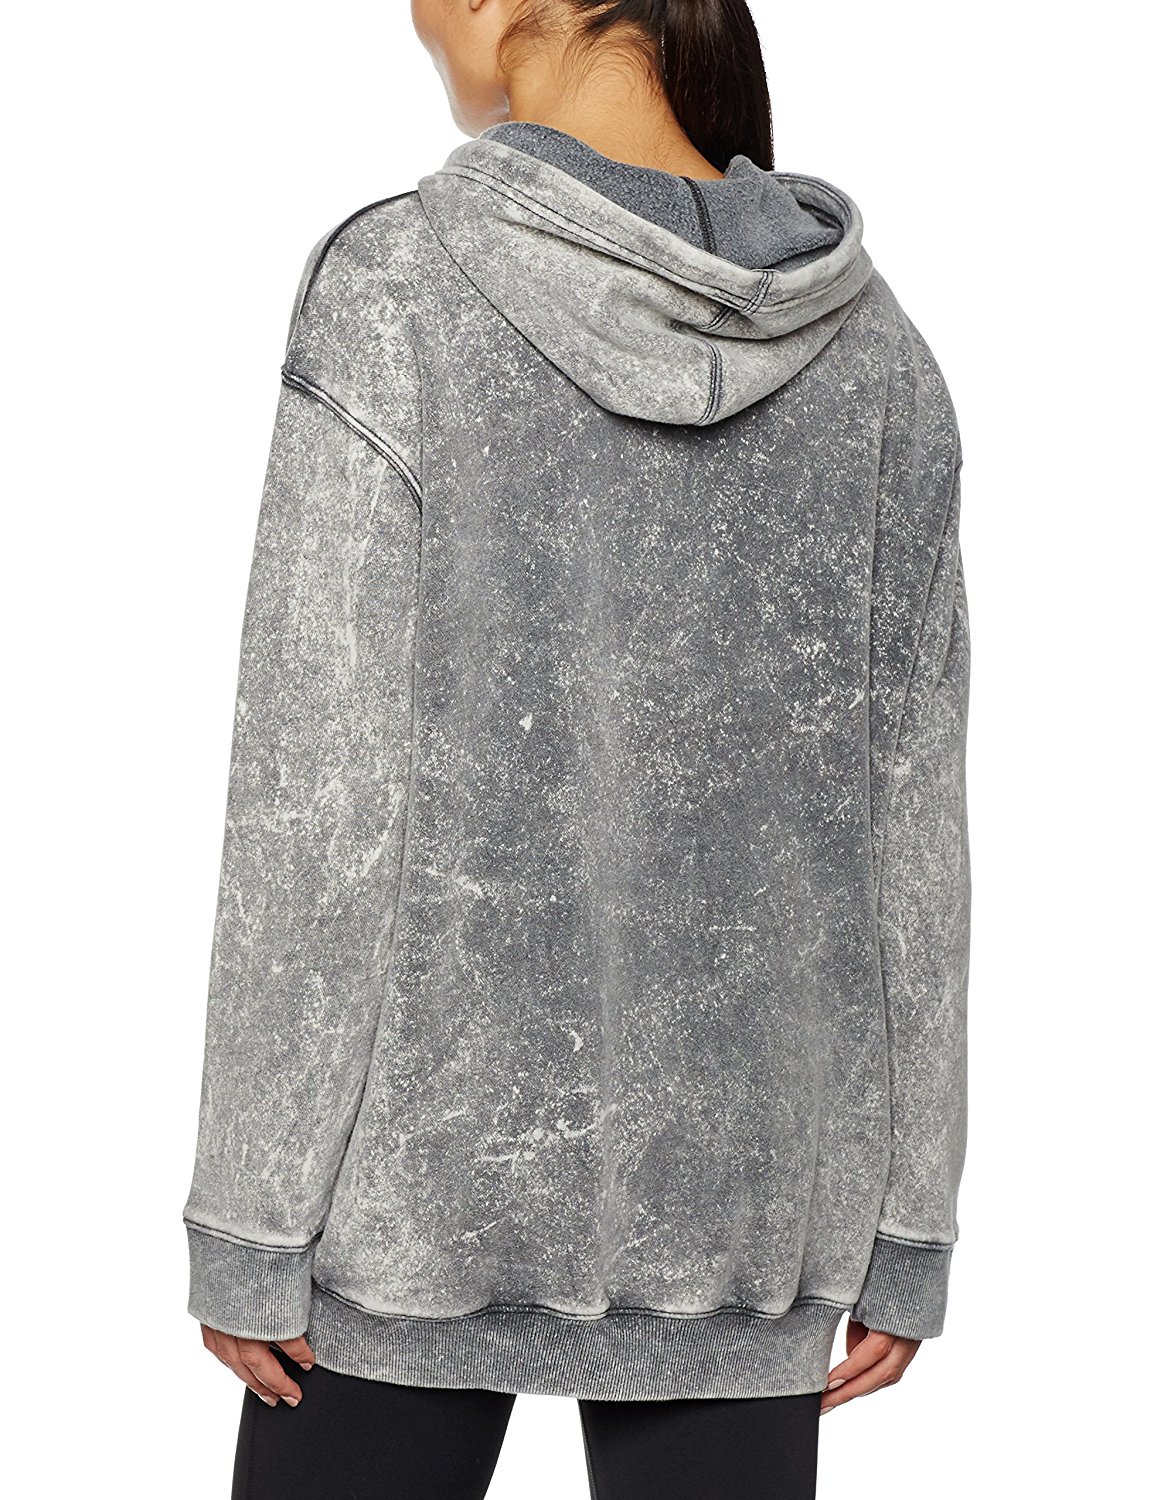 orificio de soplado ladrar bolsillo Reebok Mujer Sudadera Yoga Cover UP (grey)